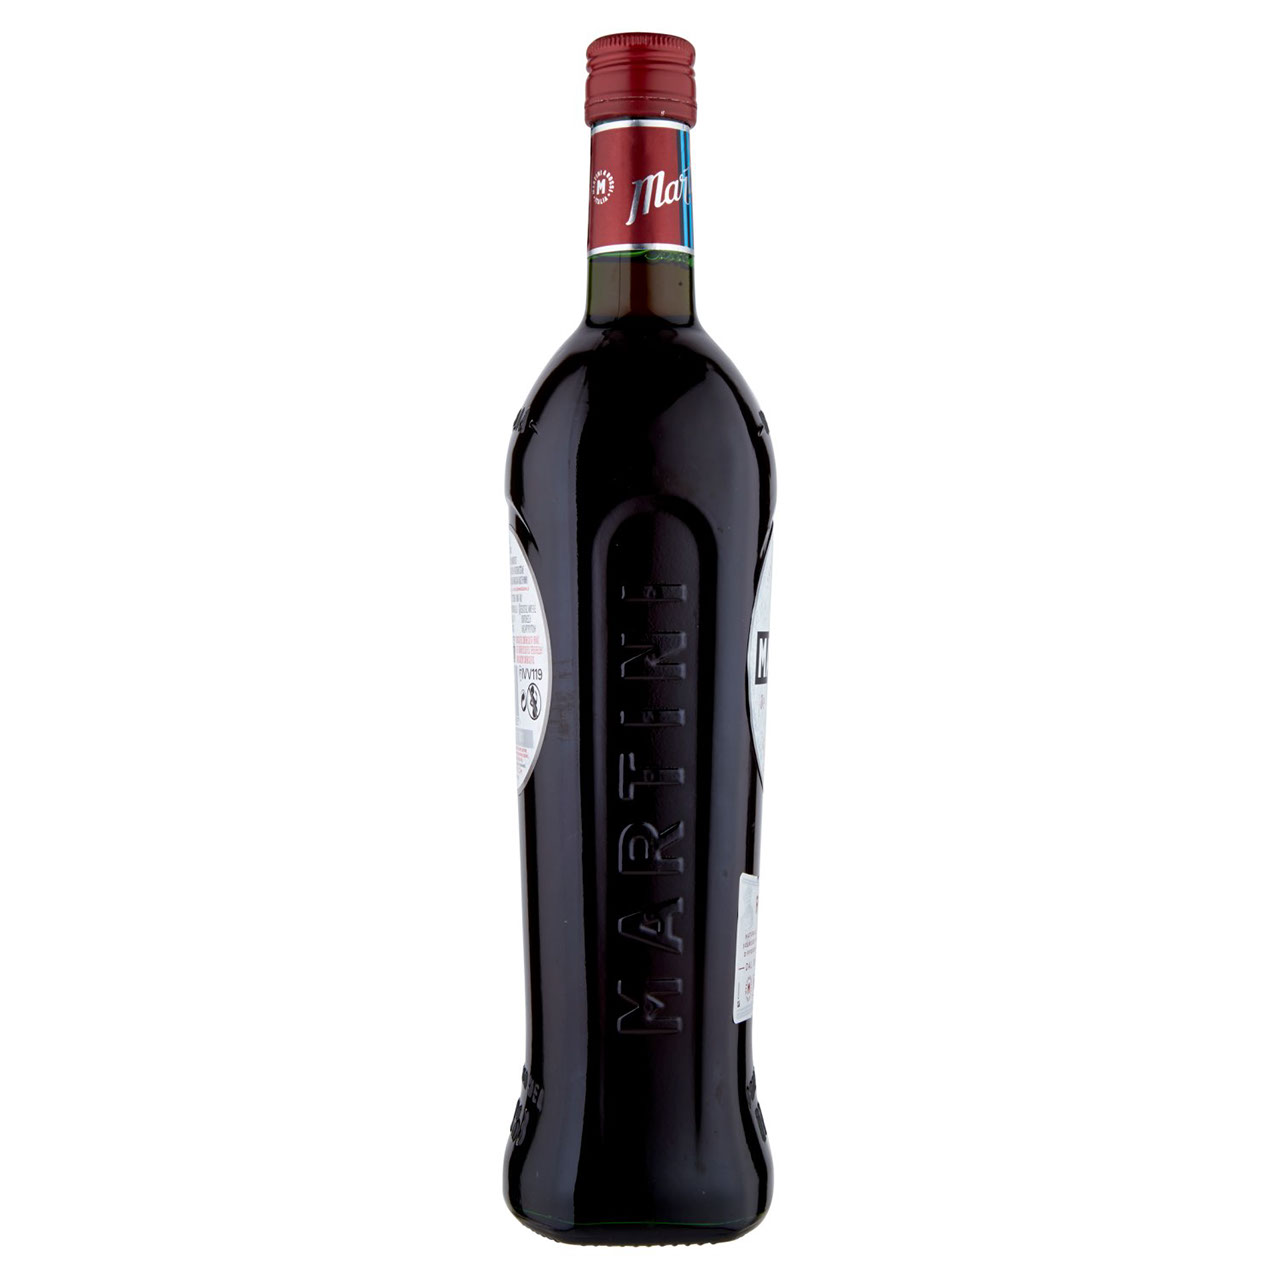 Martini l'Aperitivo Rosso 1 L in vendita online